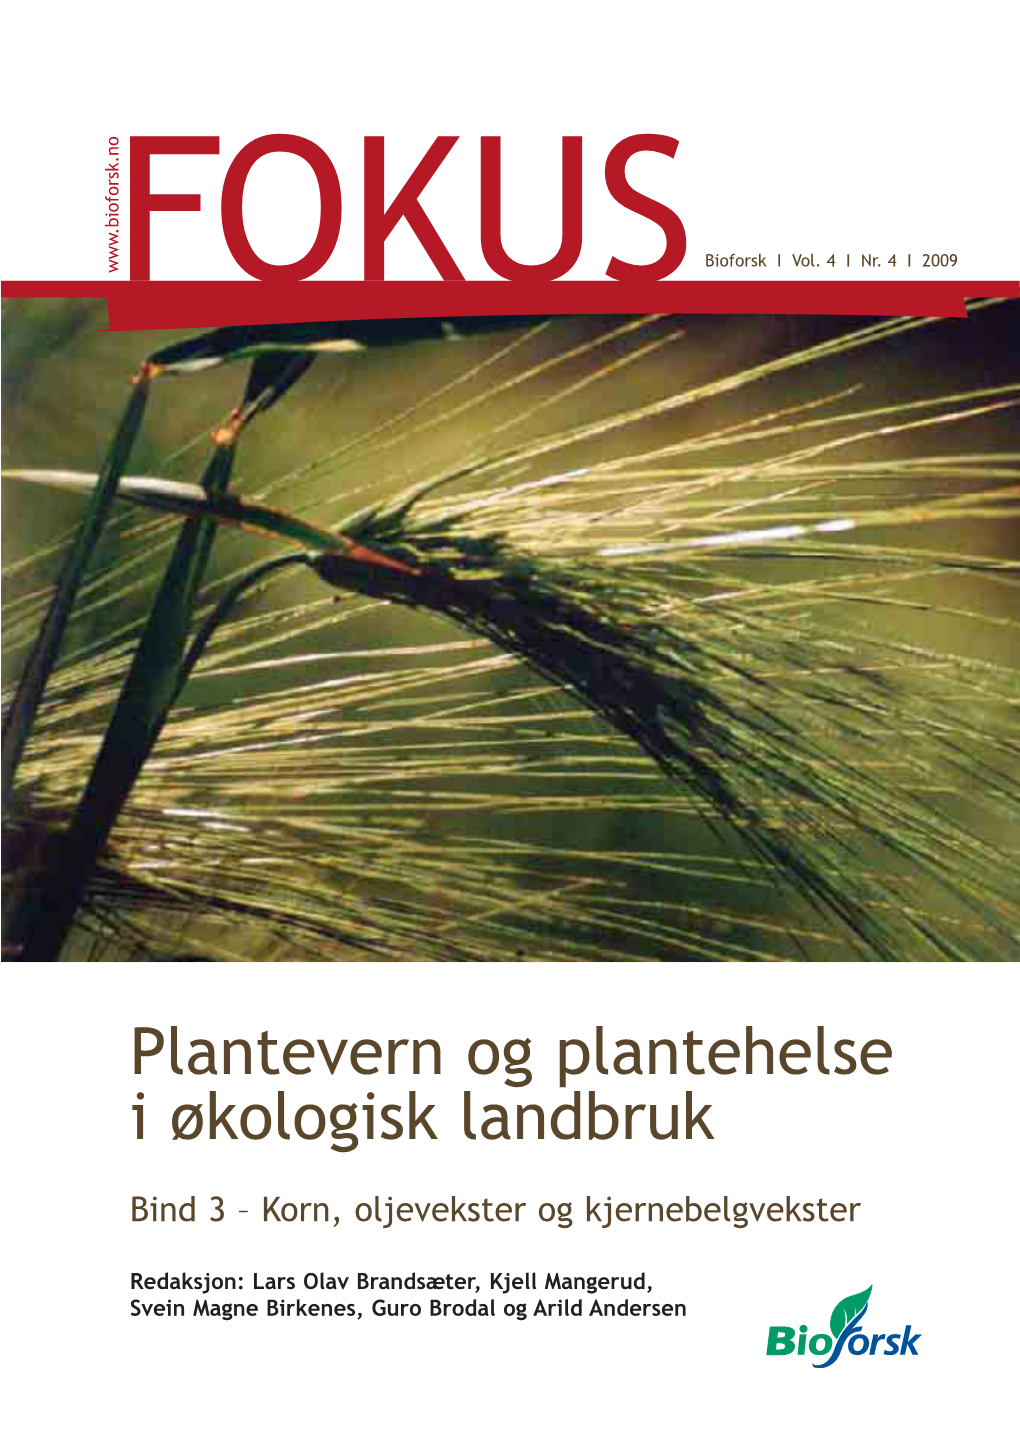 Kornboka Bioforsk Plantevern.Indd 1 29.01.2009 09:58:52 Bioforsk FOKUS Blir Utgitt Av: Bioforsk, Frederik A